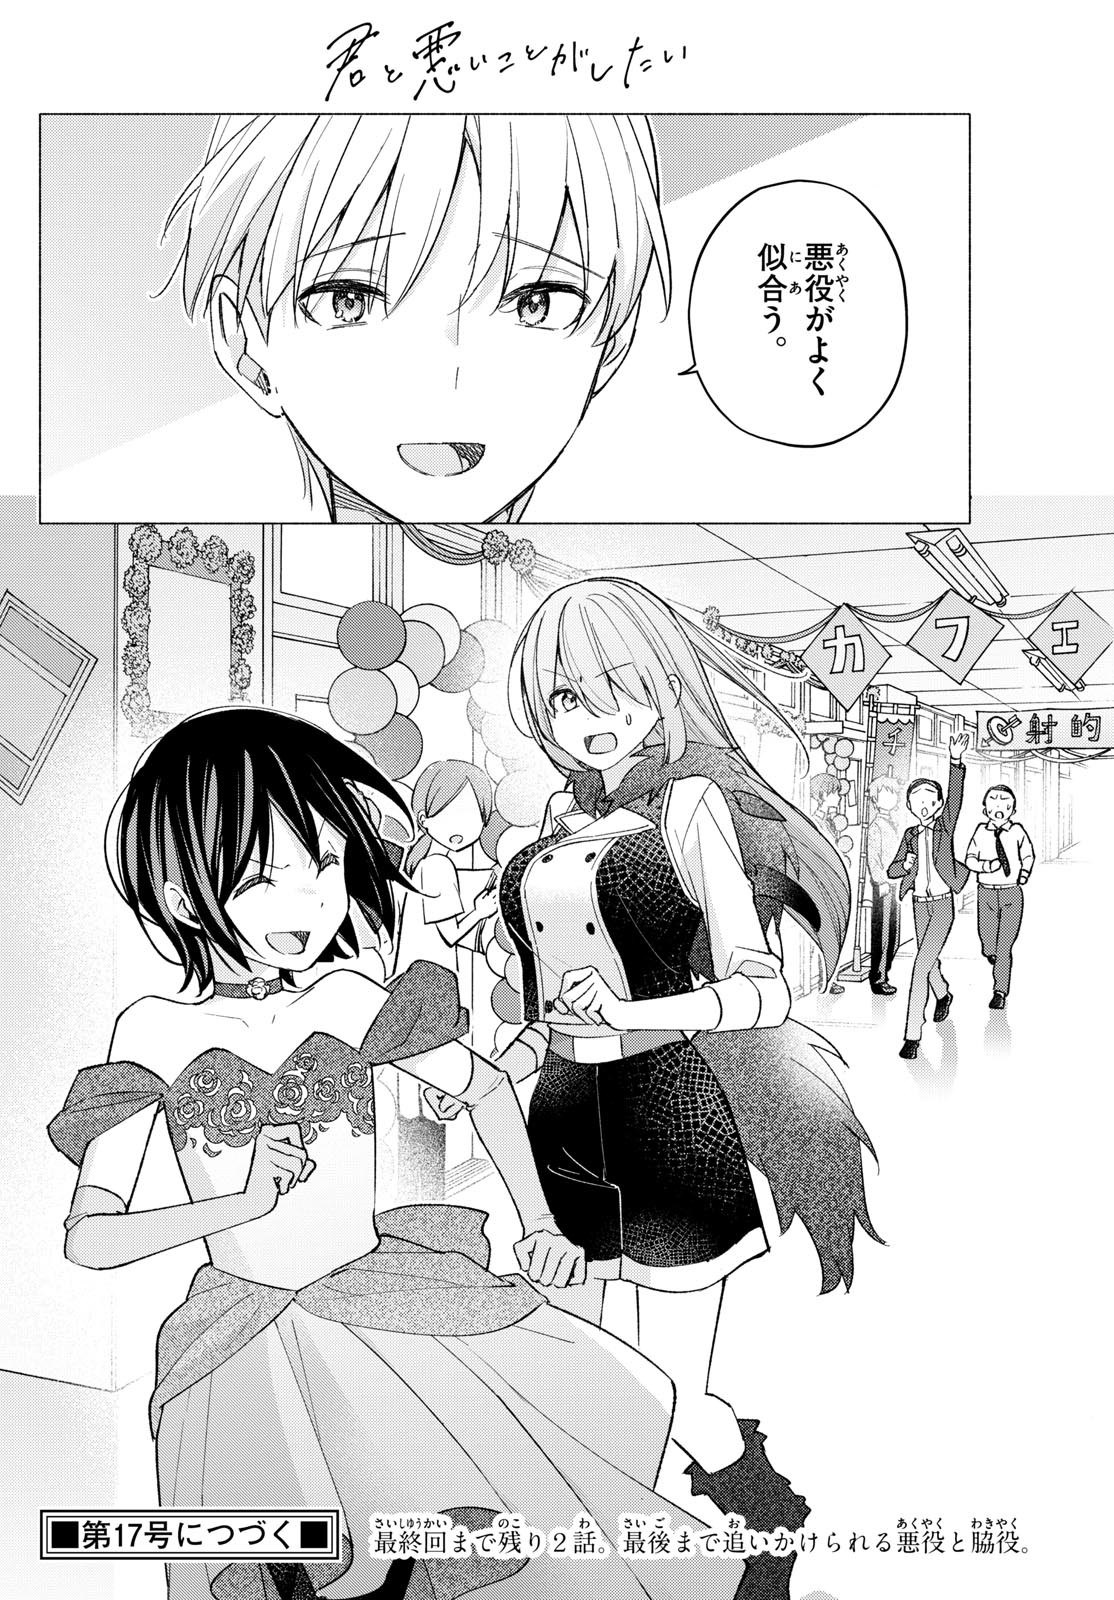 Kimi to Warui Koto ga Shitai - Chapter 065 - Page 18